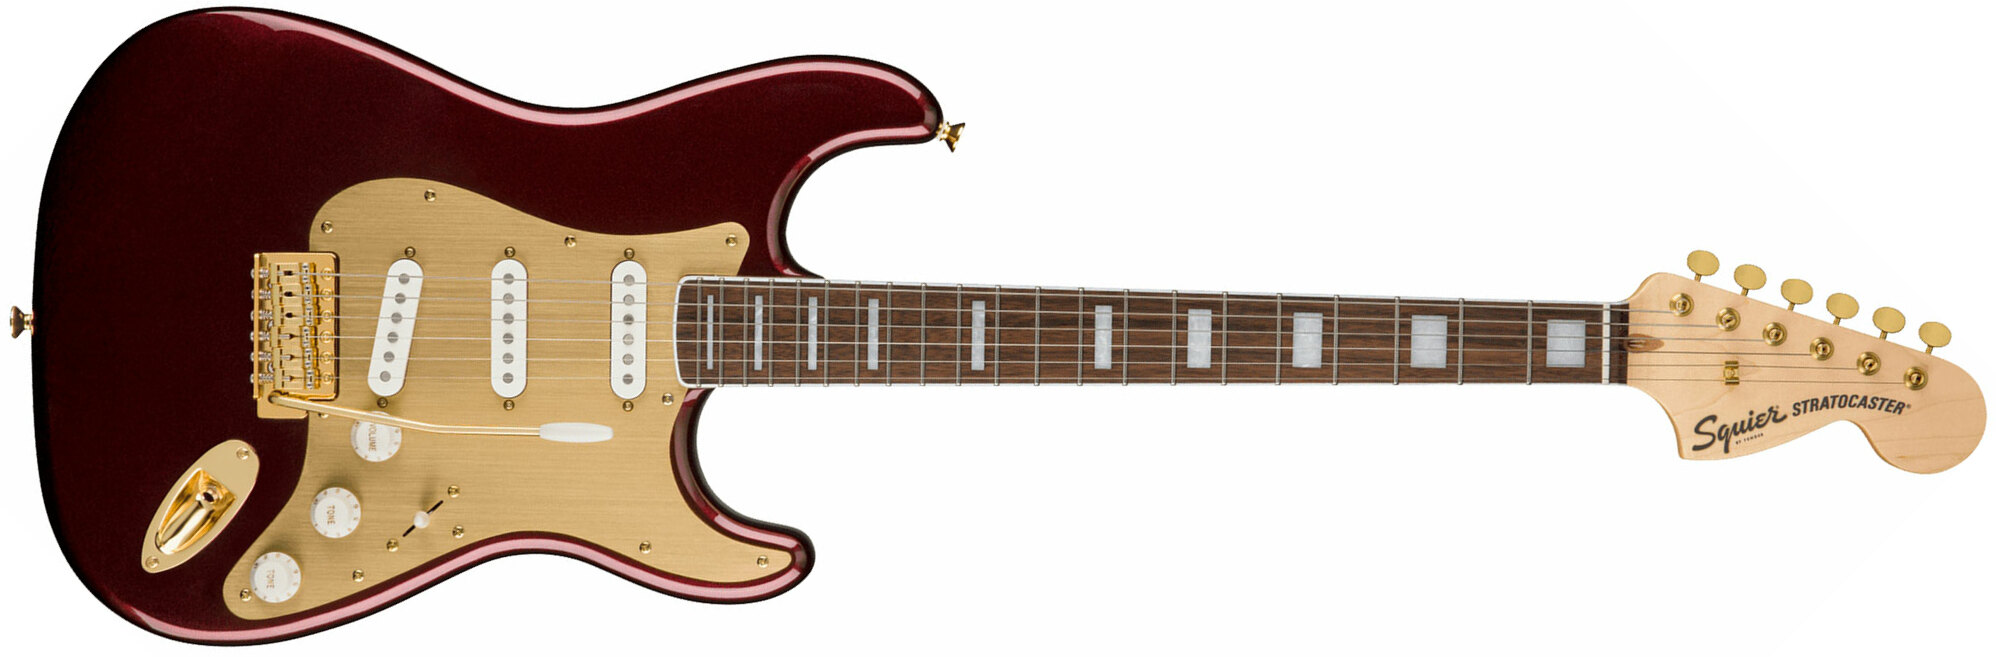 Squier Strat 40th Anniversary Gold Edition Lau - Ruby Red Metallic - Elektrische gitaar in Str-vorm - Main picture